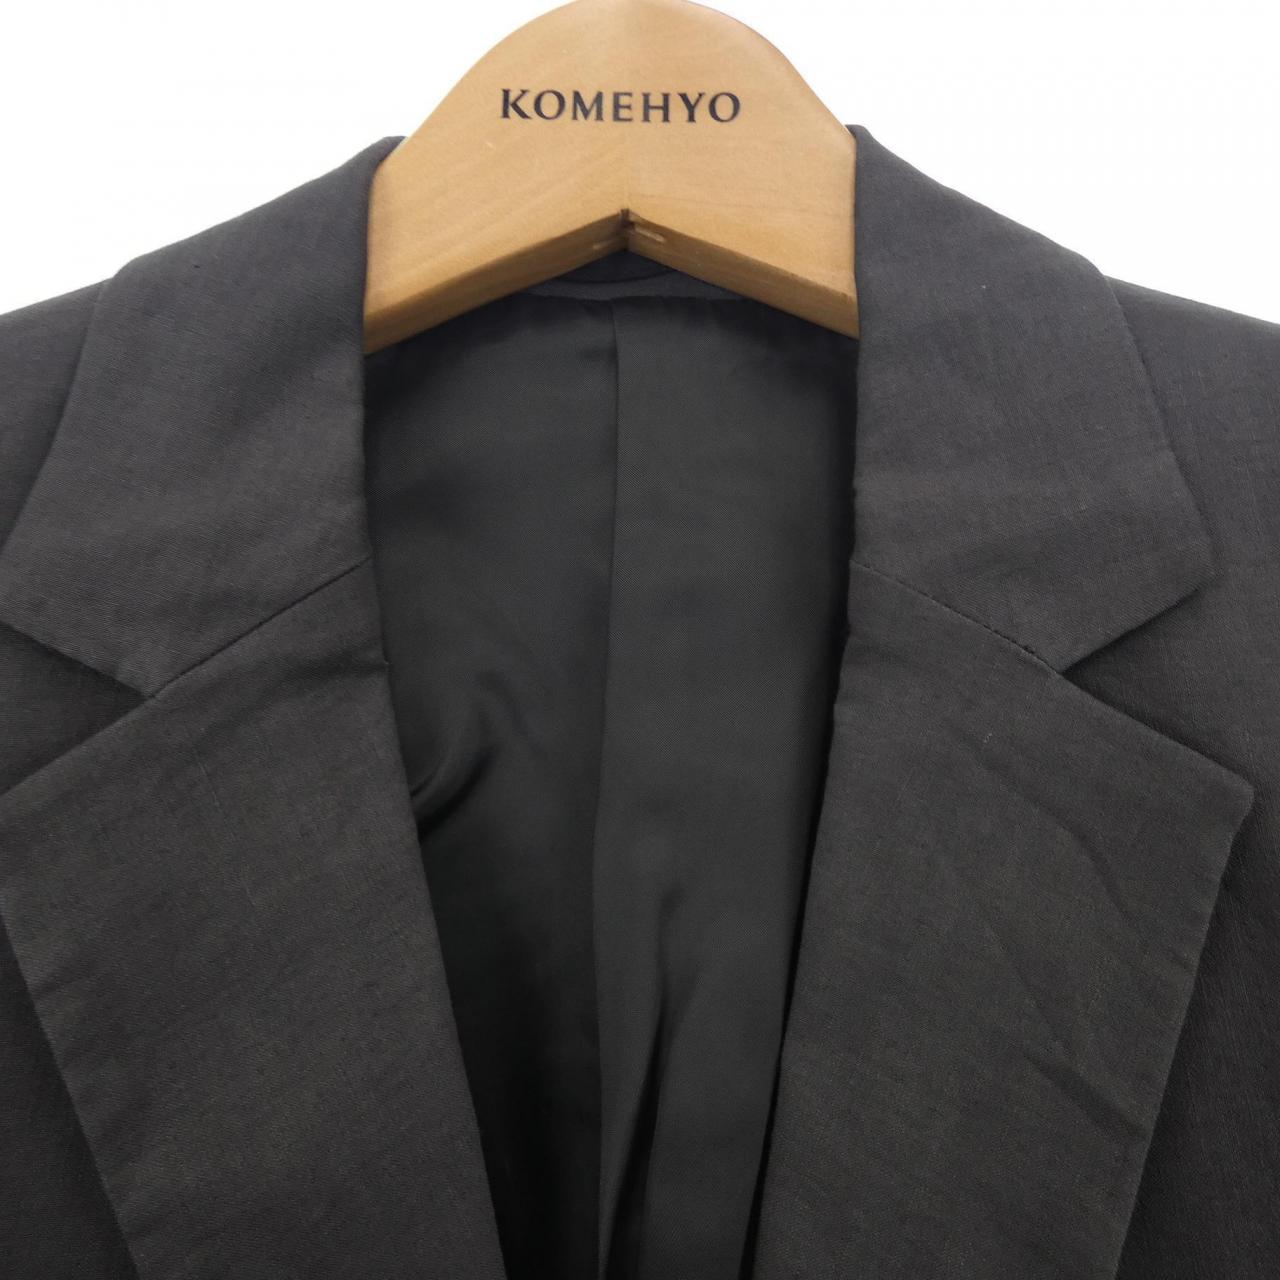 コメ兵 セオリー Theory スーツ セオリー メンズファッション その他 公式 日本最大級のリユースデパートkomehyo